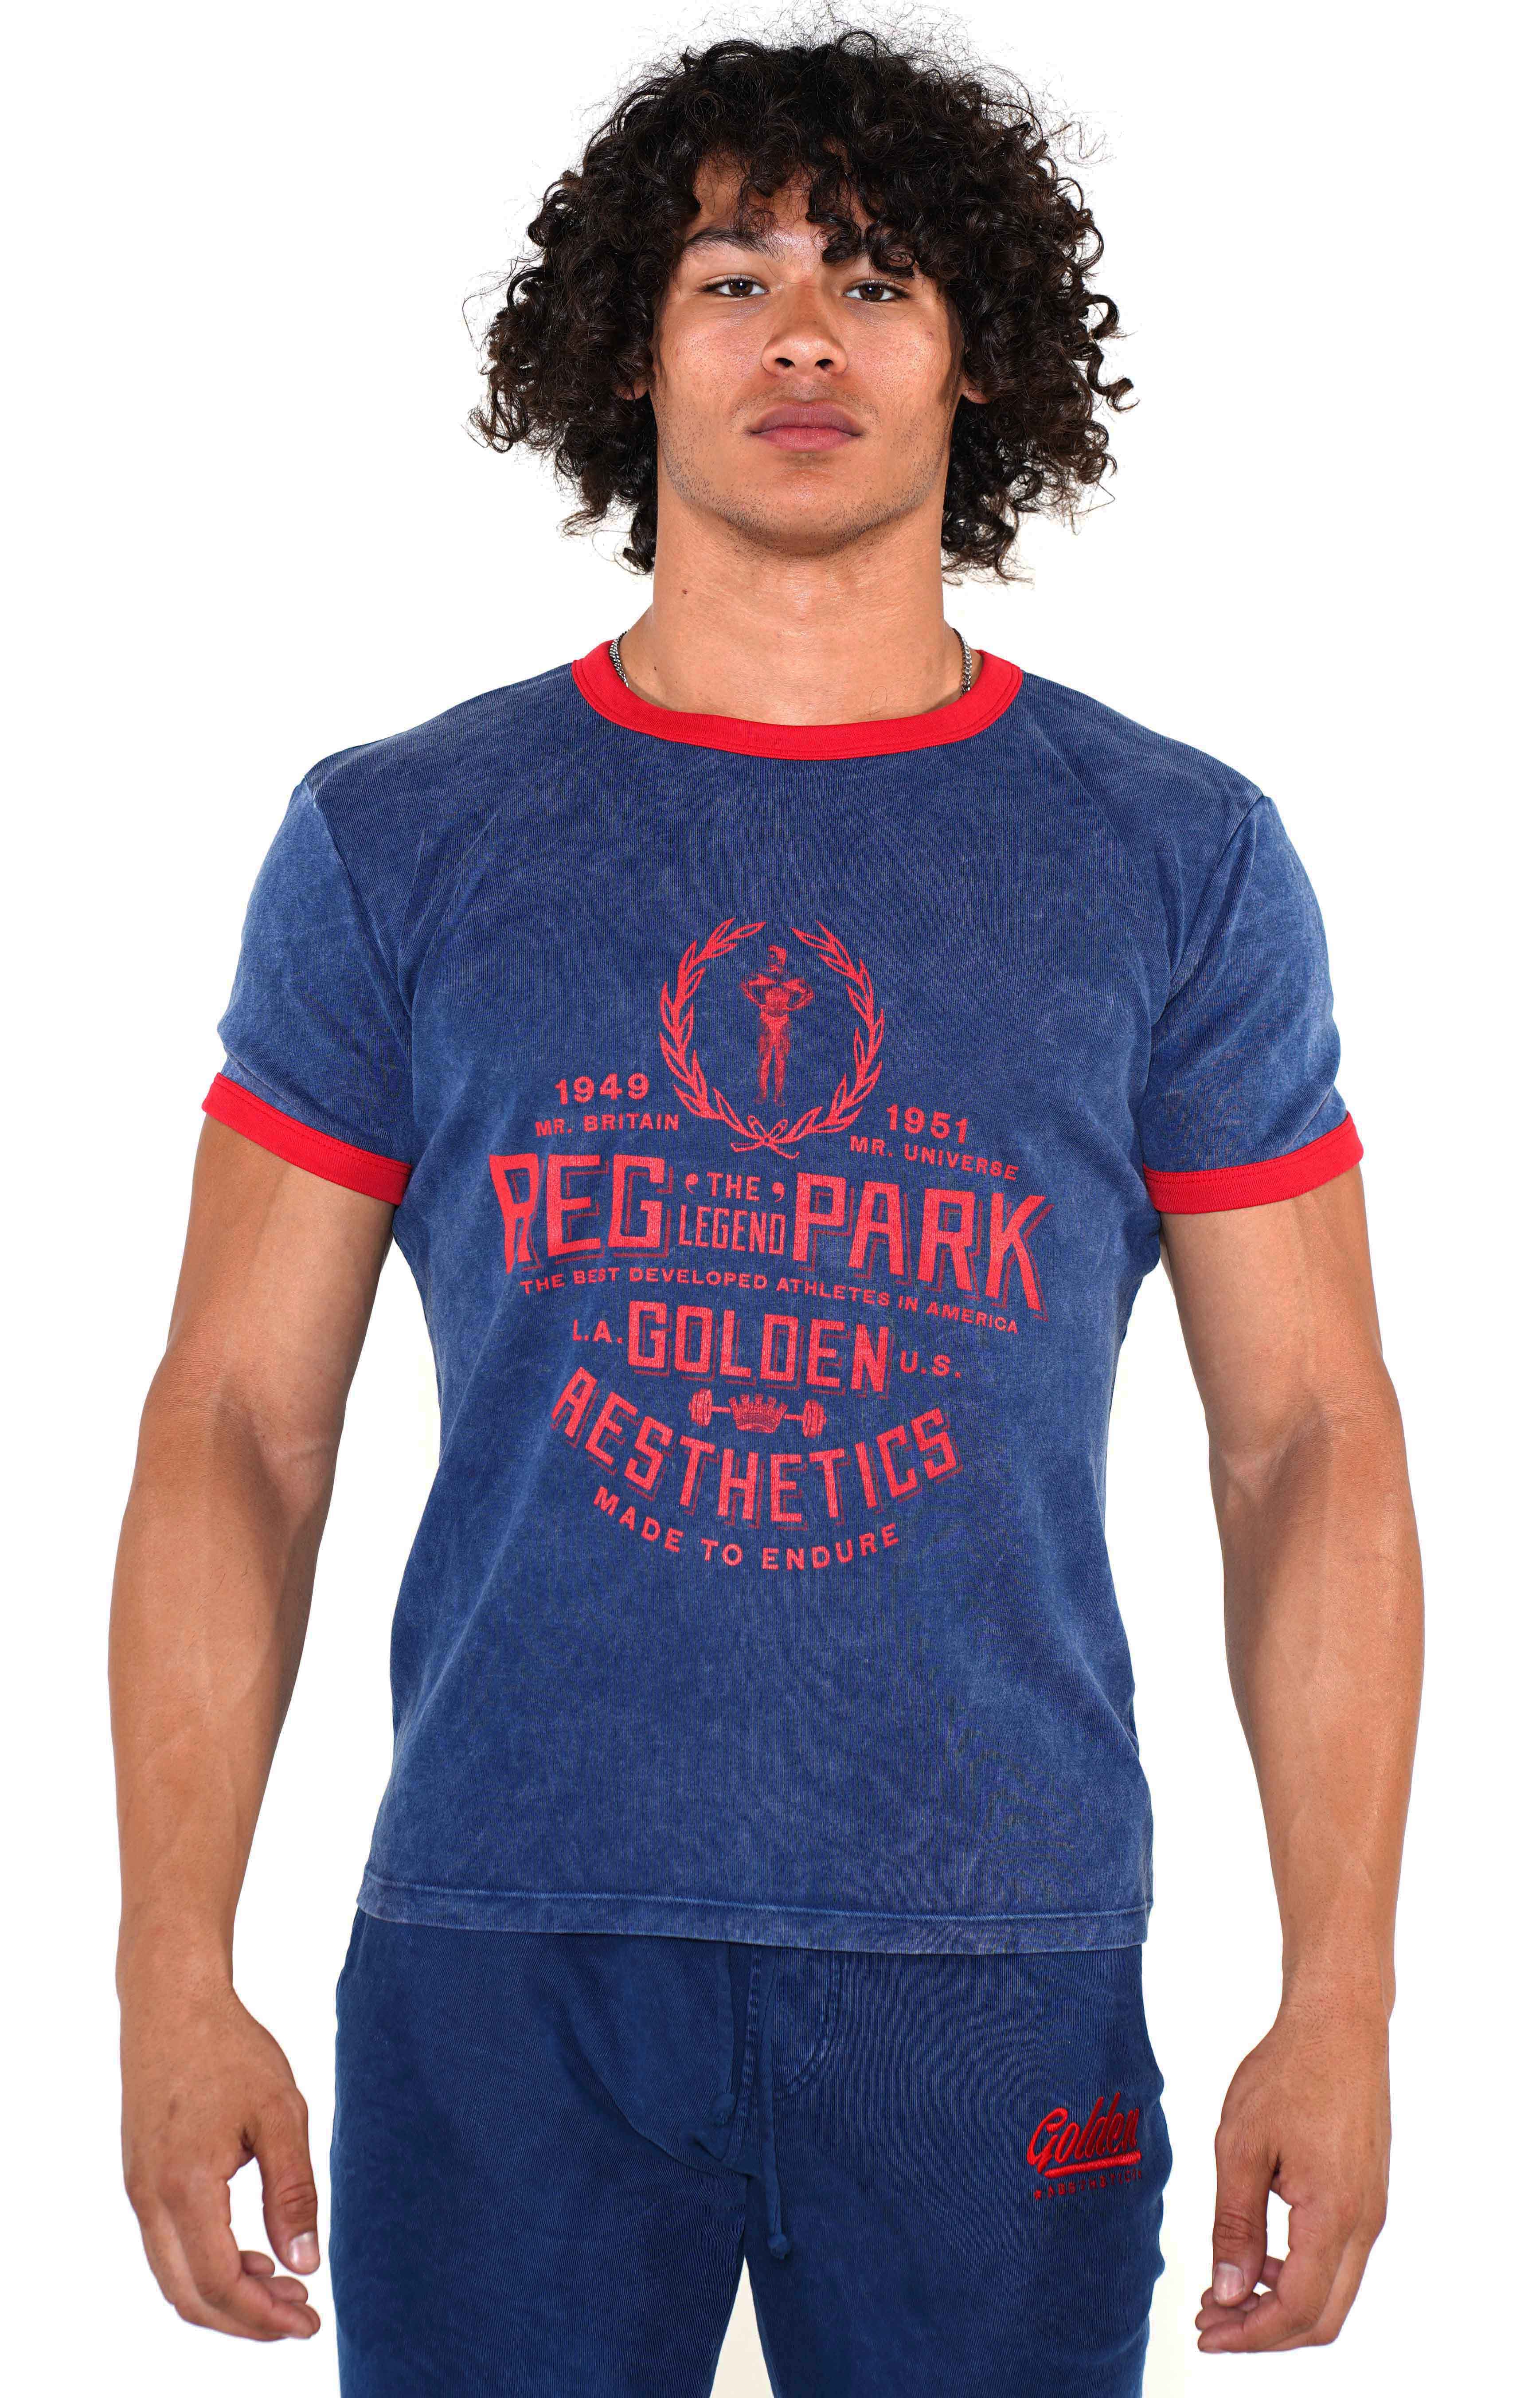 Men's Navy/Red Reg Park Ringer T-Shirt - Golden Aesthetics